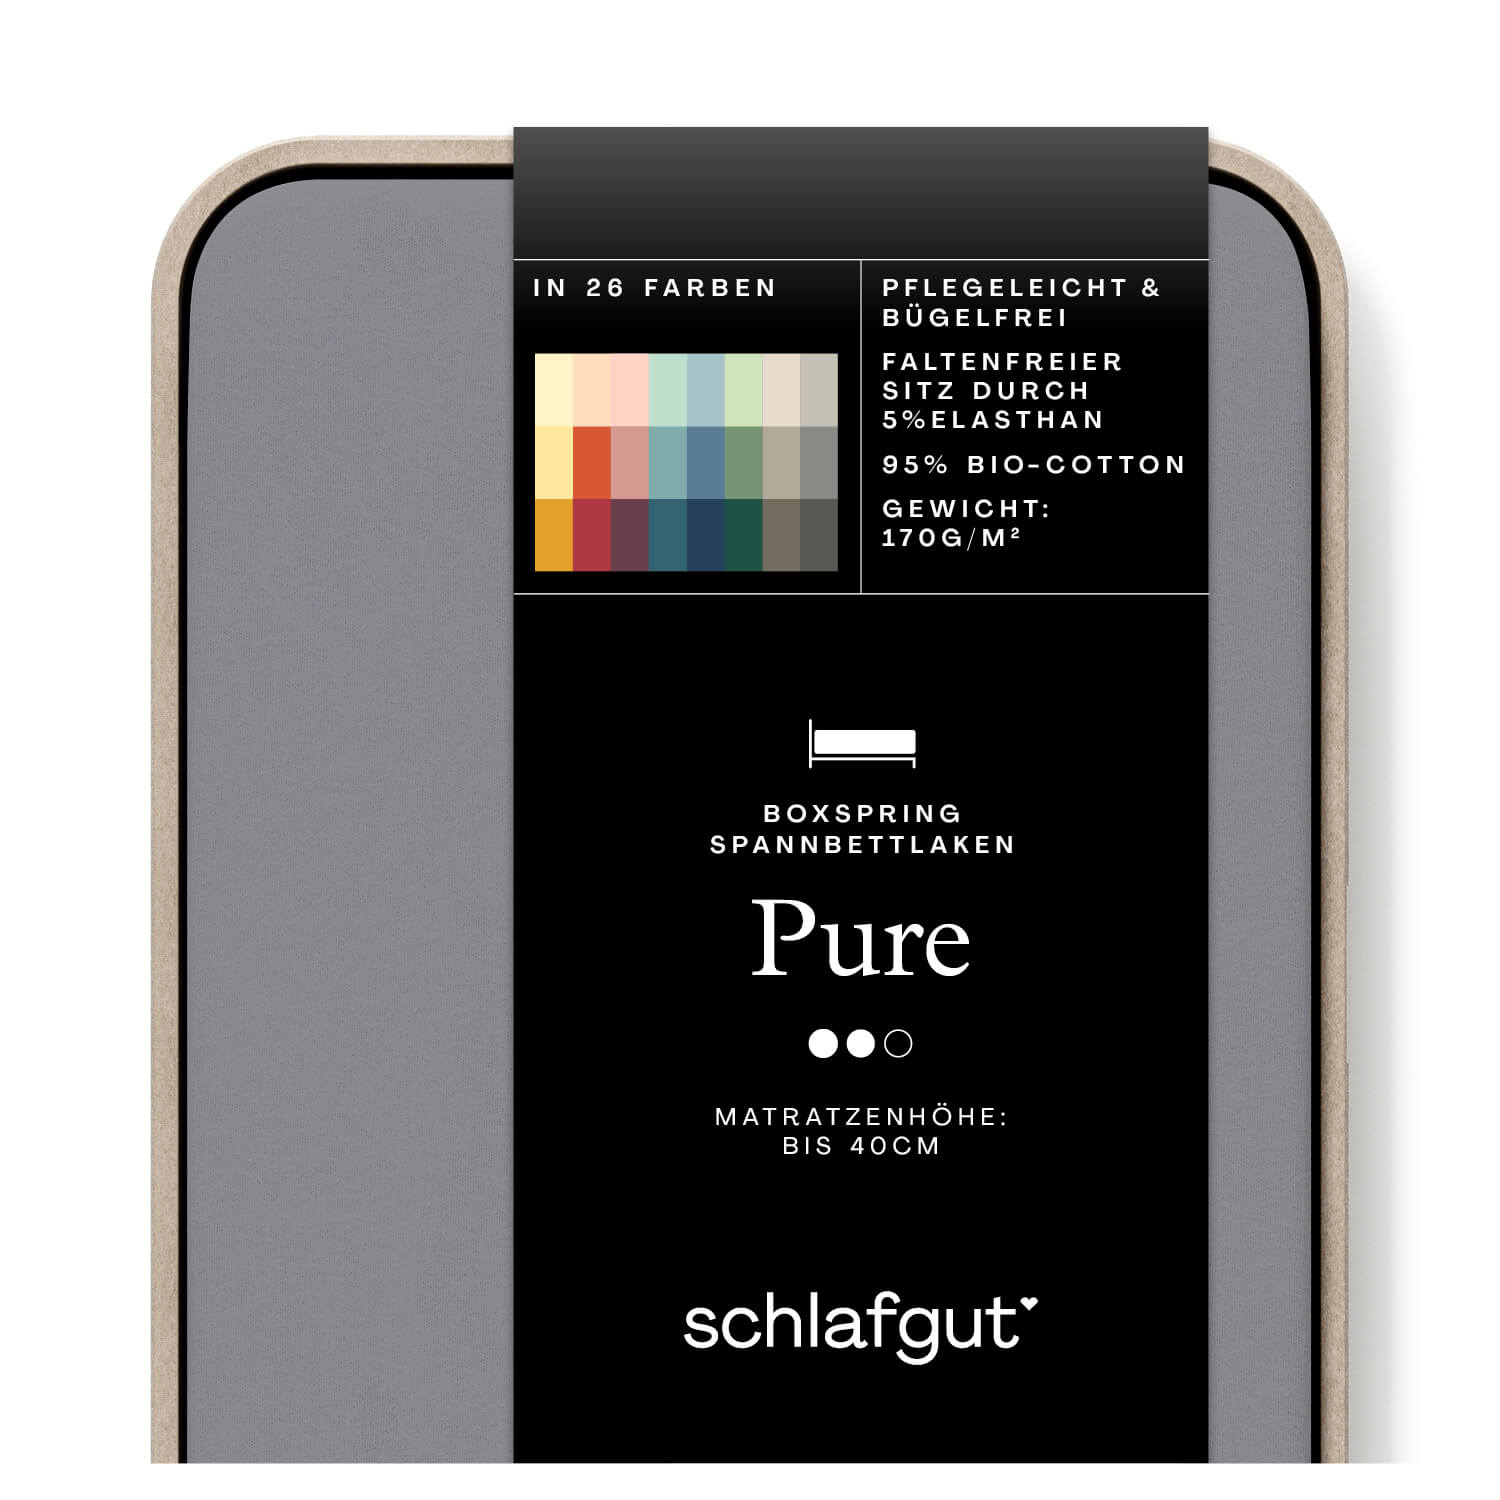 Das Produktbild vom Spannbettlaken der Reihe Pure Boxspring in Farbe grey mid von Schlafgut